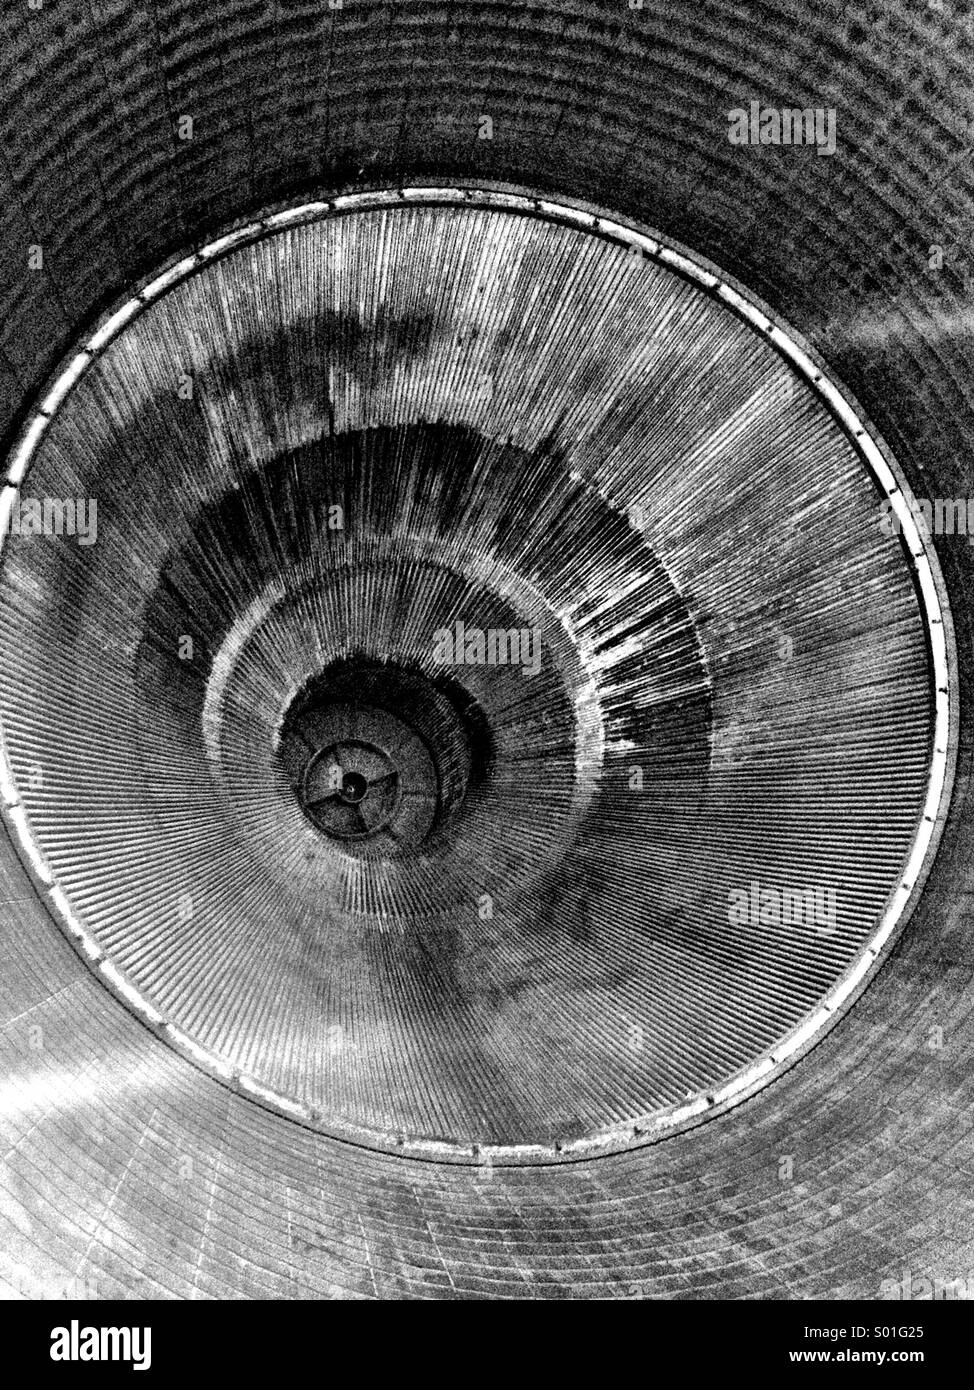 El interior de la tobera de un motor Rocketdyne F-1 como se ve en un cohete Saturno V.. Foto de stock